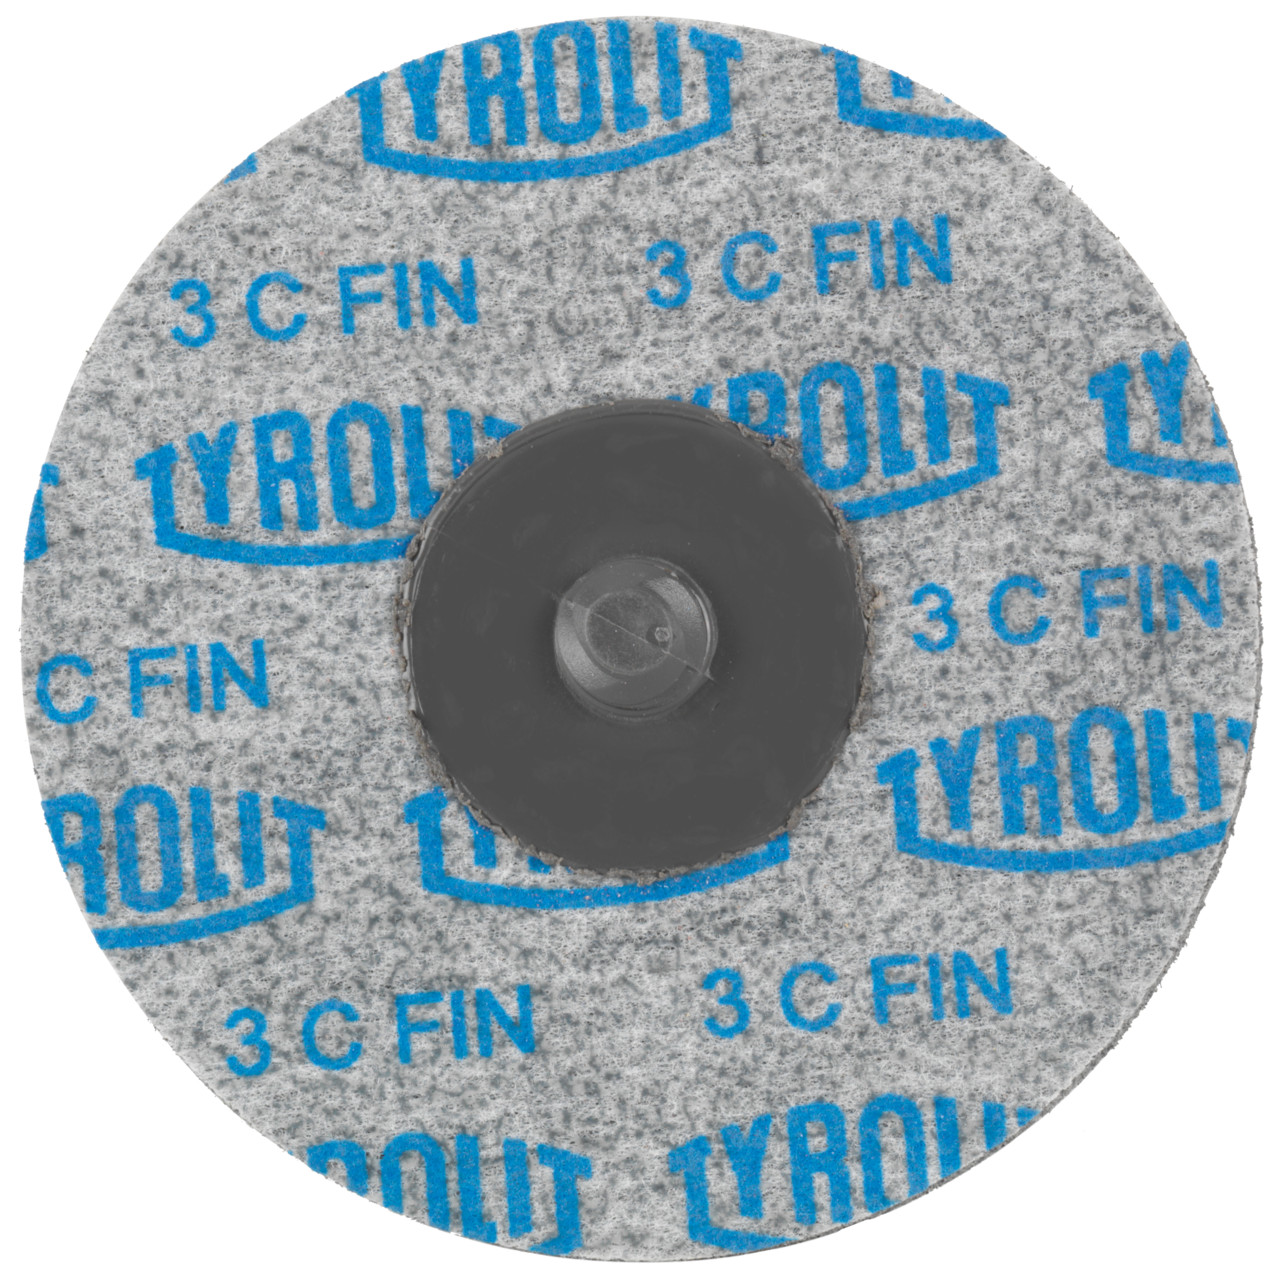 Tyrolit Discos compactos prensados DISCO DE CAMBIO RÁPIDO dimensión 76xR De uso universal, 6 C FEIN, forma: QDISC, Art. 34190140